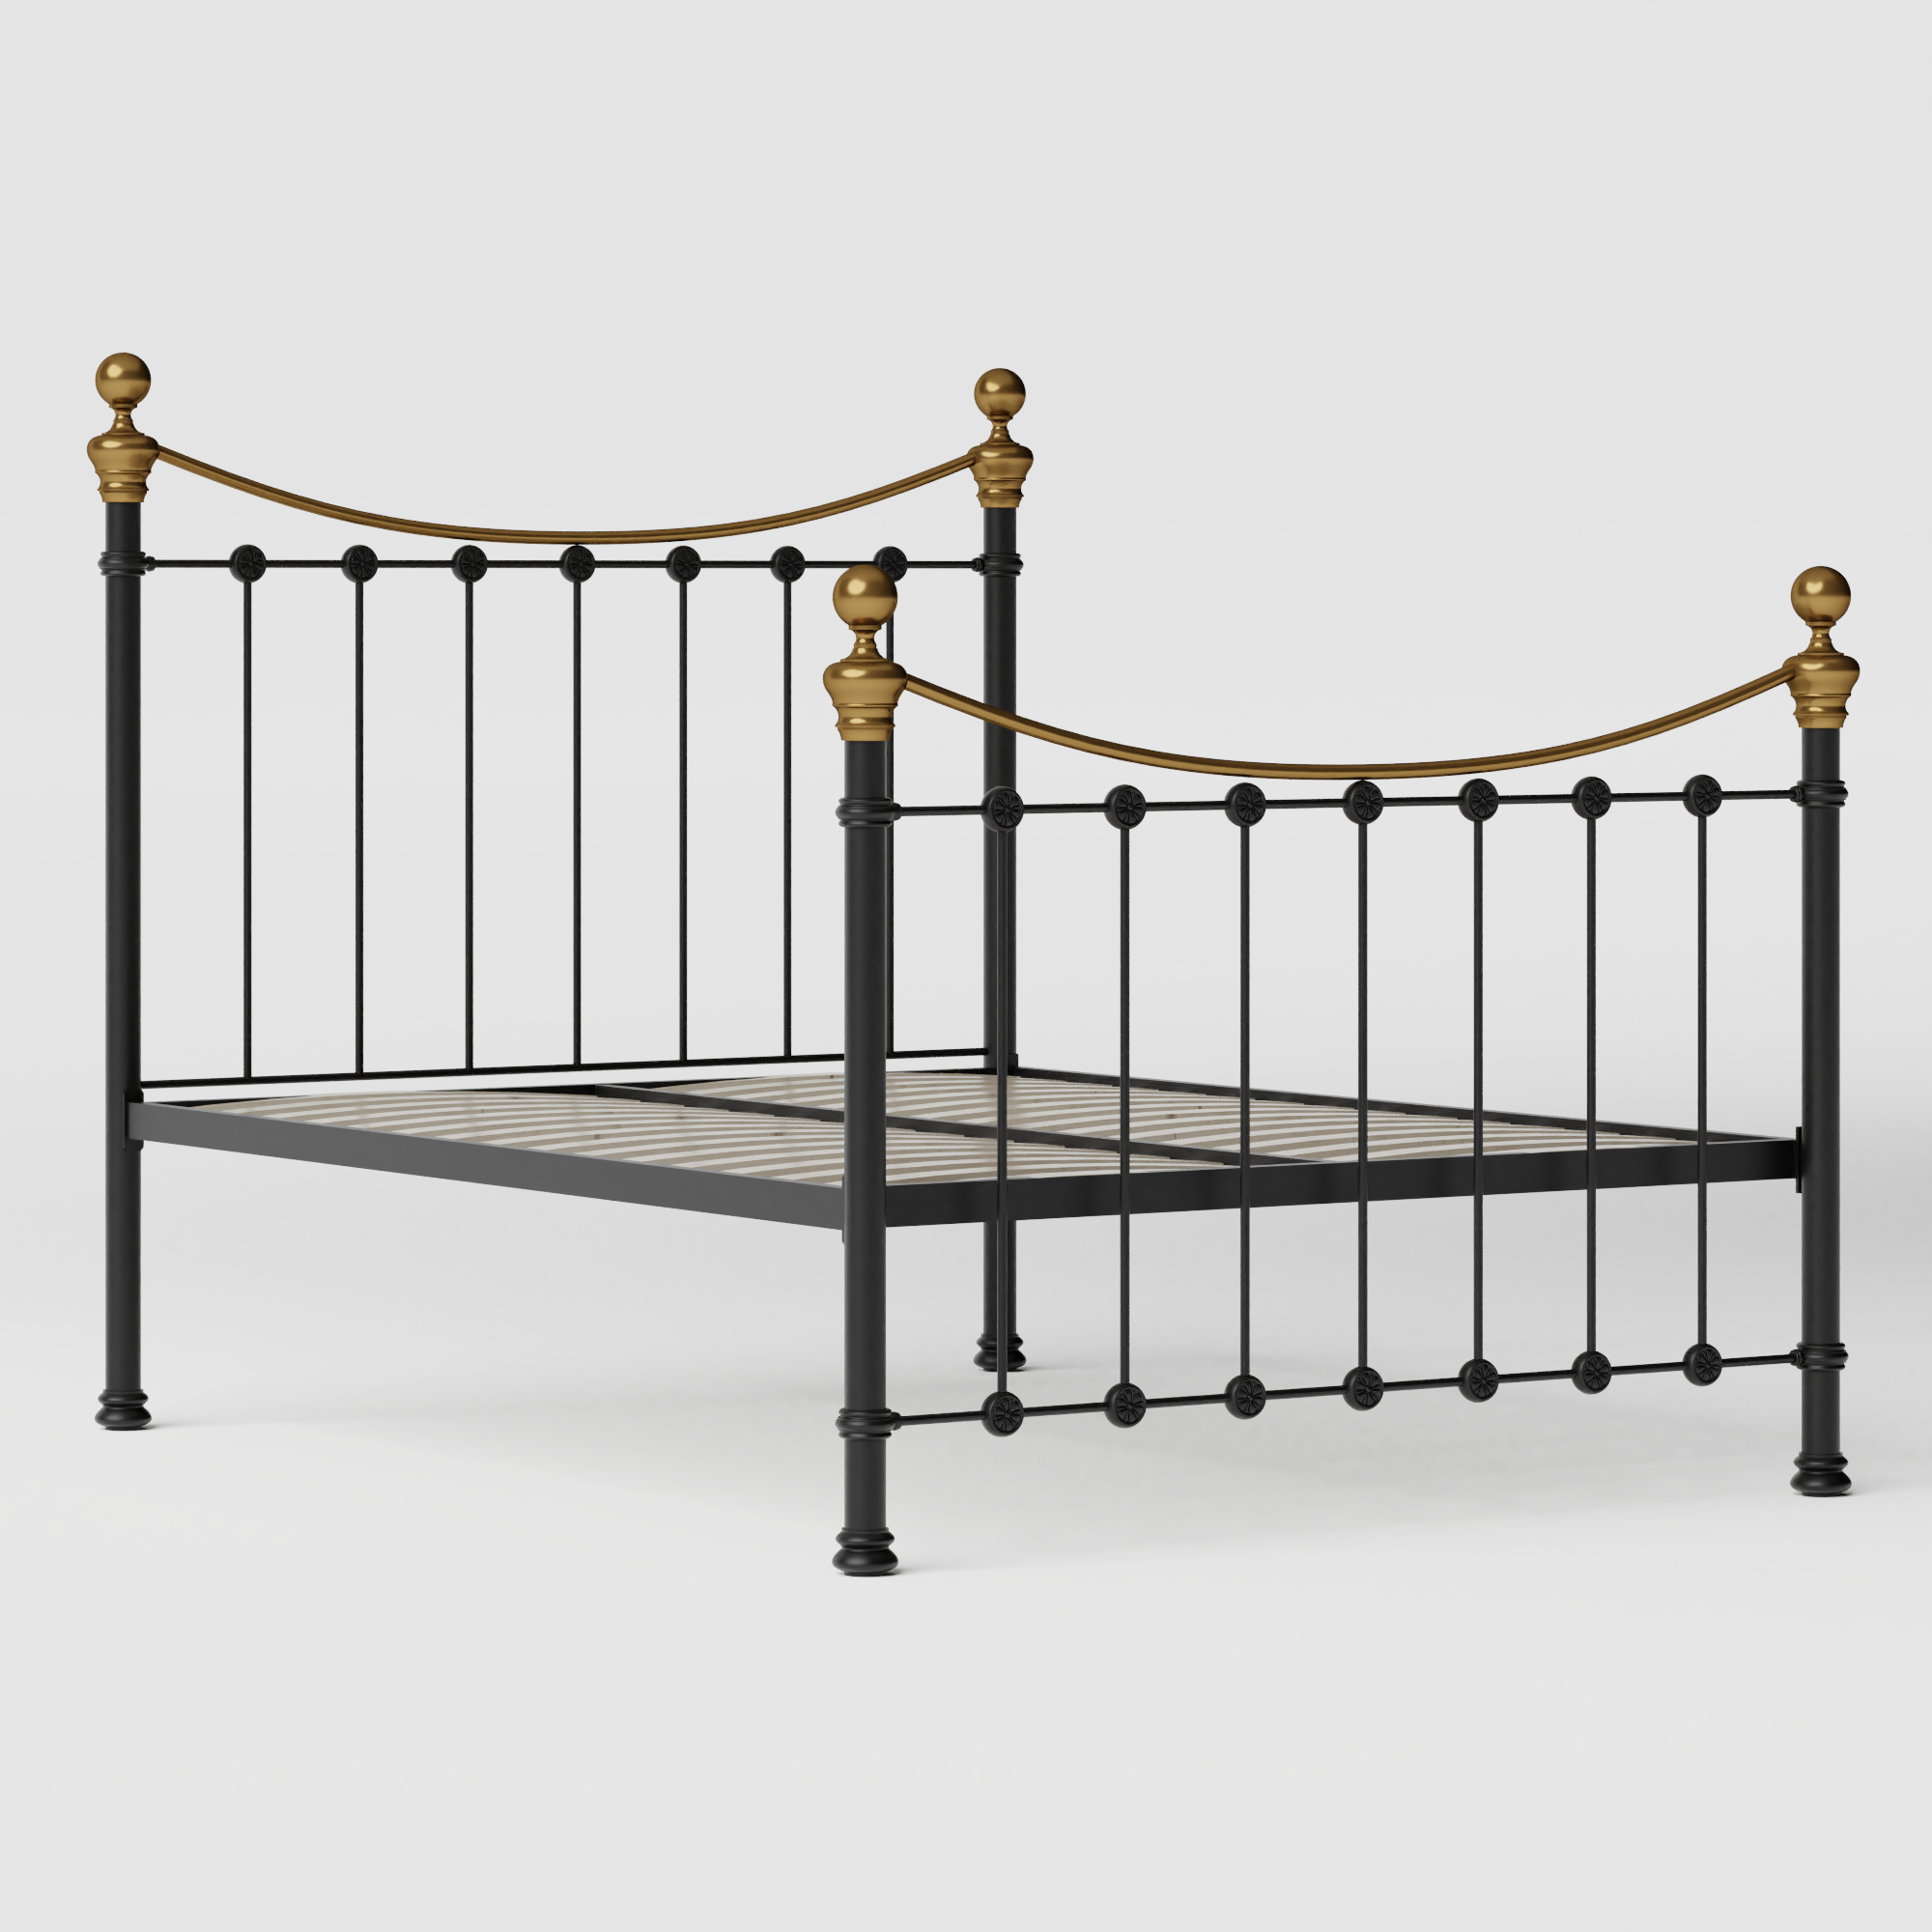 Selkirk iron/metal bed in black